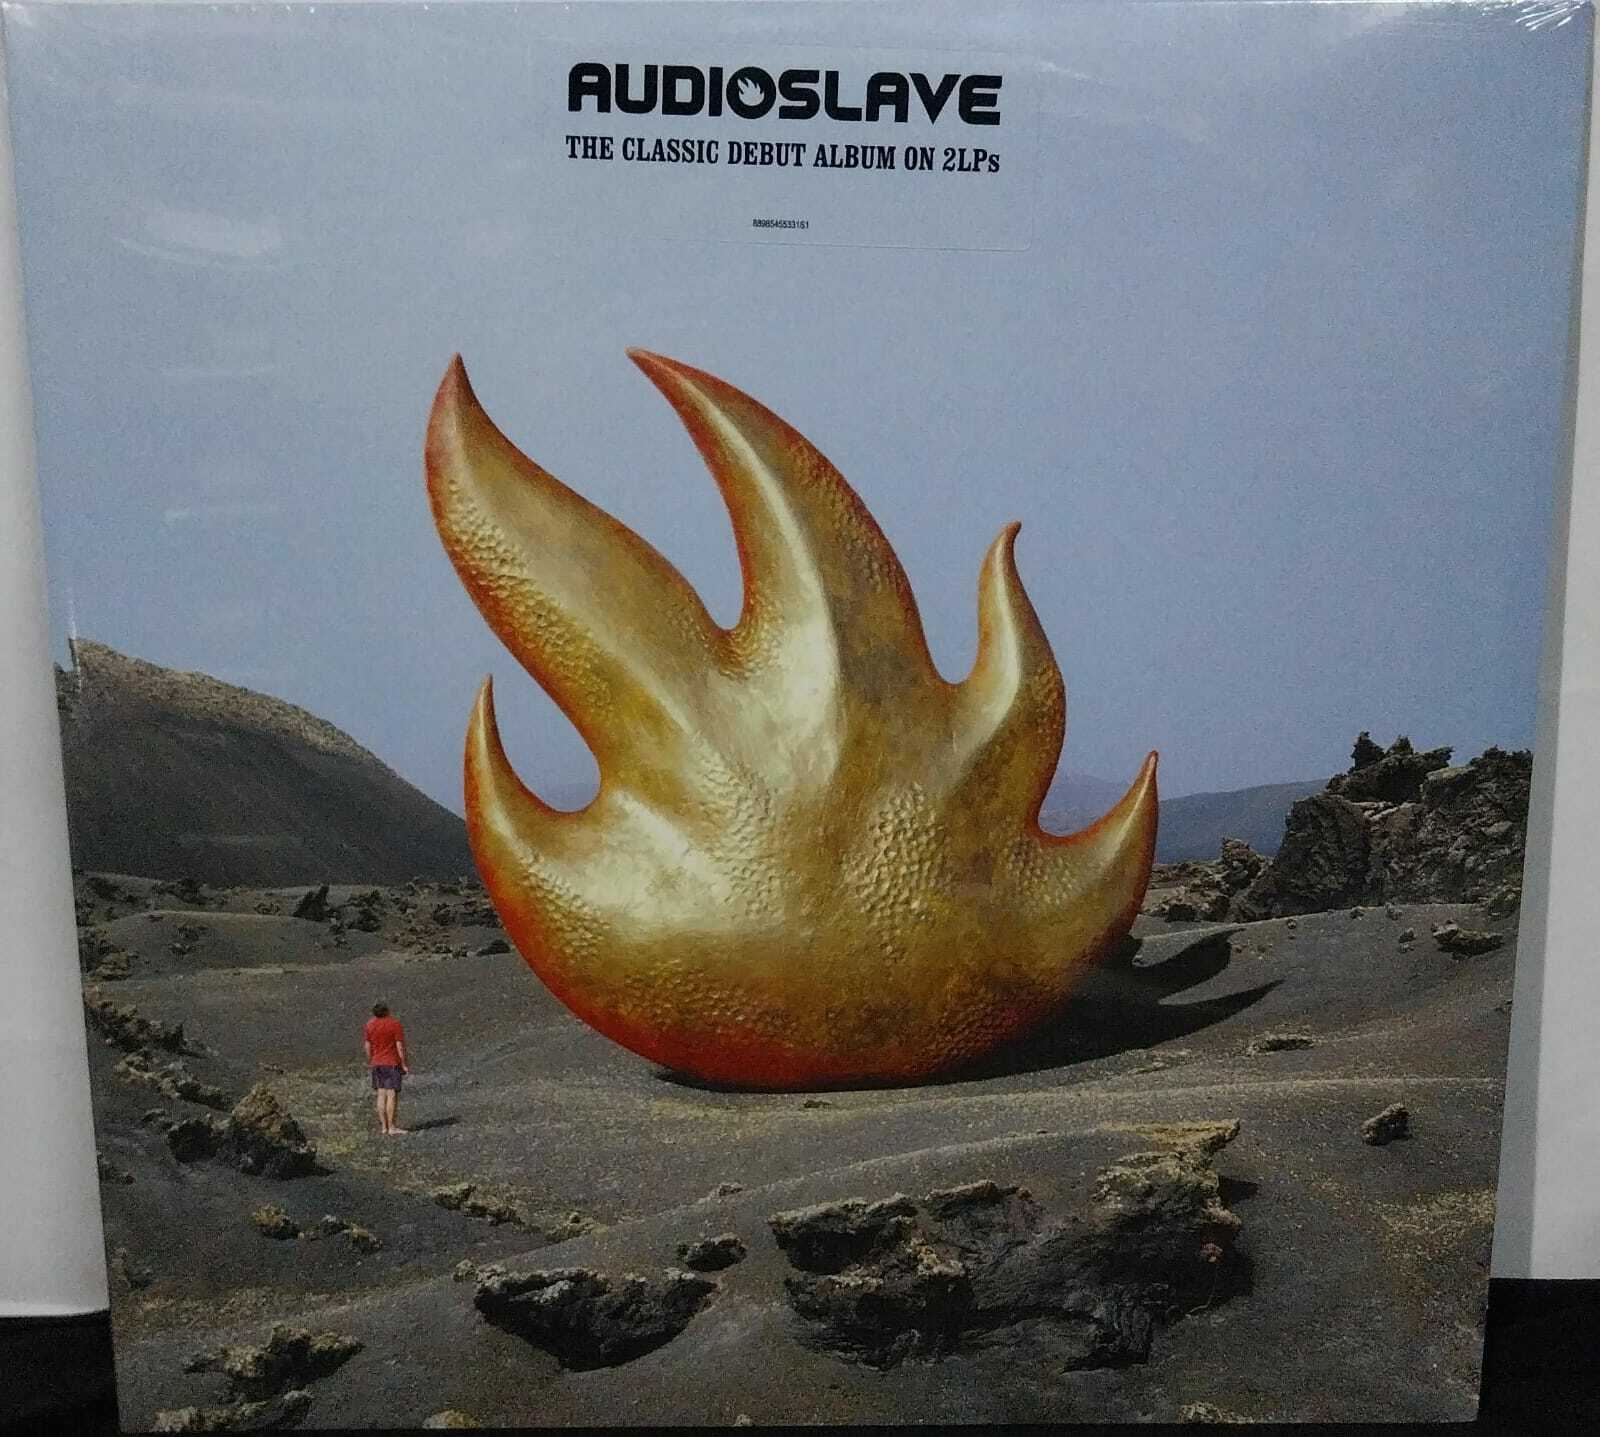 Vinil - Audioslave - 2002 (Lacrado/Duplo/USA)